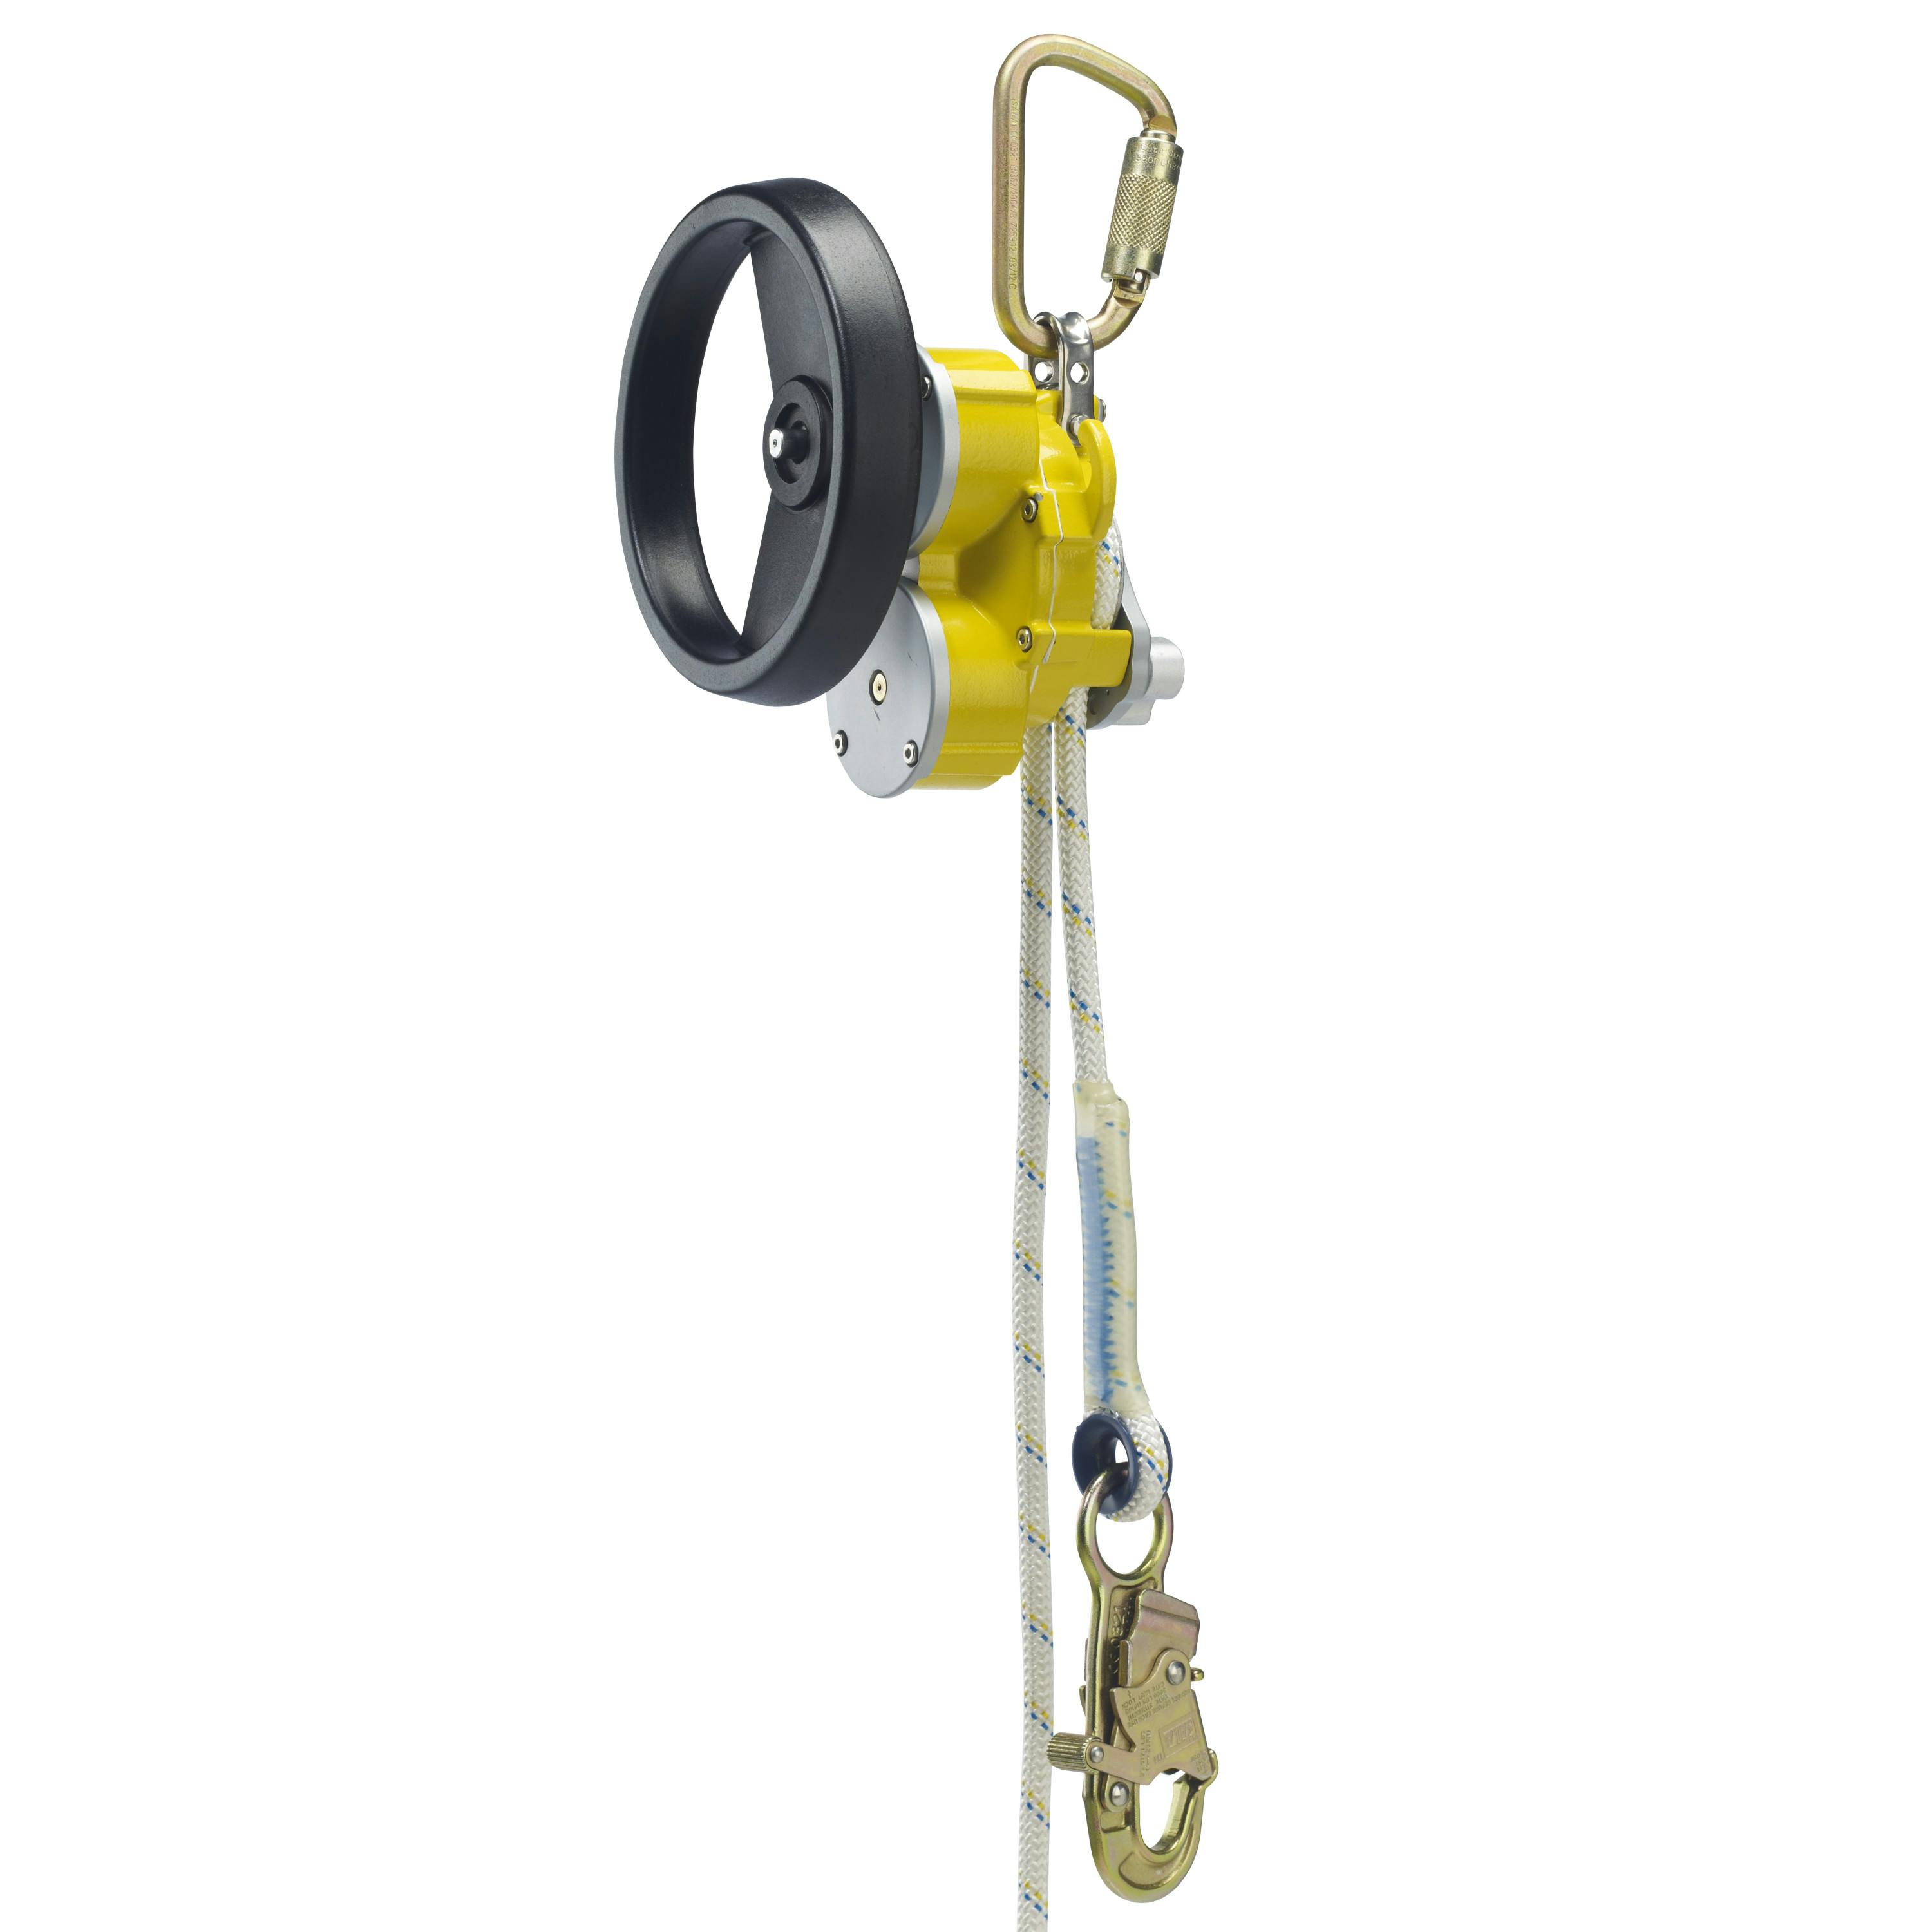 3M™ DBI-SALA® Rollgliss™ R550 Rescue and Escape Device - Rescue Kit 3329060, Yellow, 60 m, 1 EA/Case